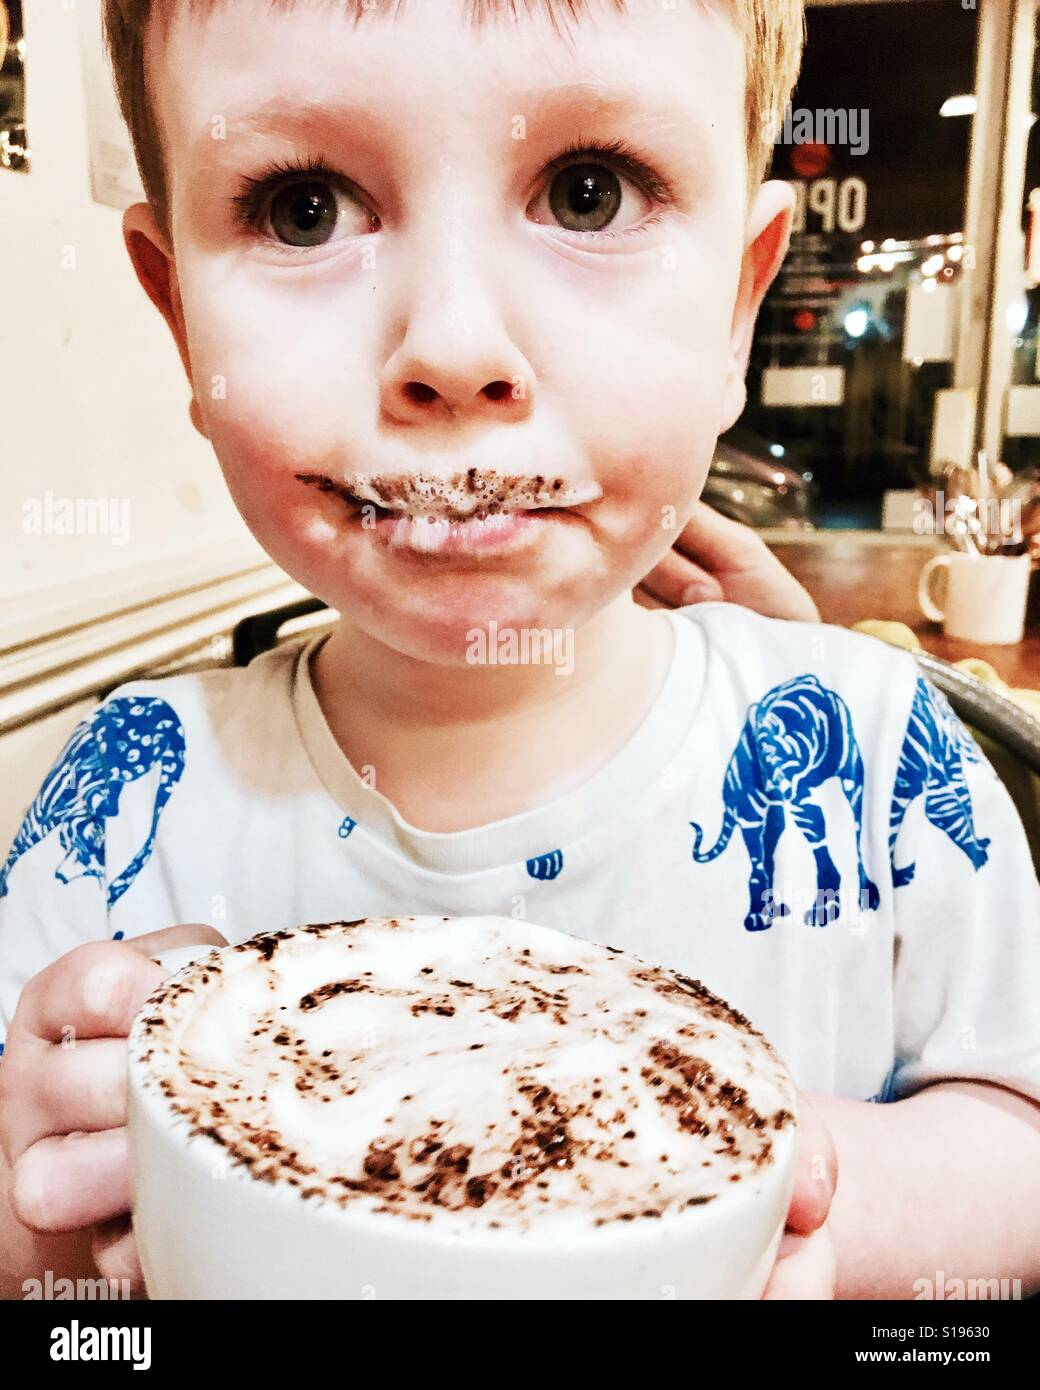 Ein Kleinkind junge trinkt aus einem Babycino und bekommt einen milchigen schokoladigen Schnurrbart Stockfoto